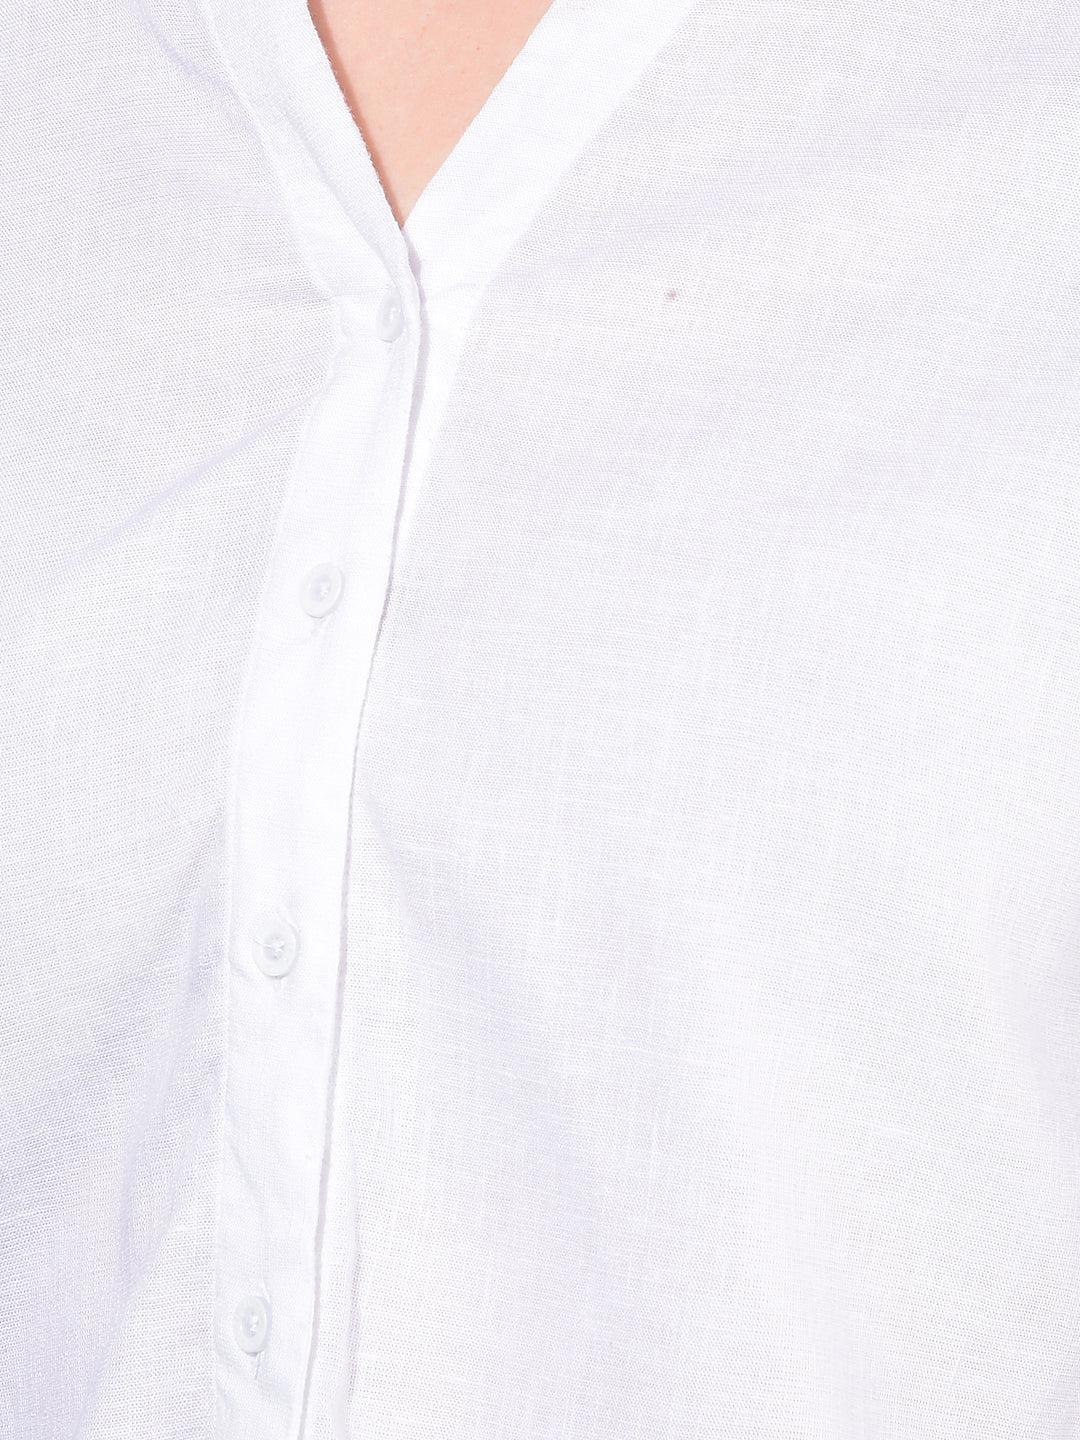 White Linen Shirt-Women Shirts-Crimsoune Club